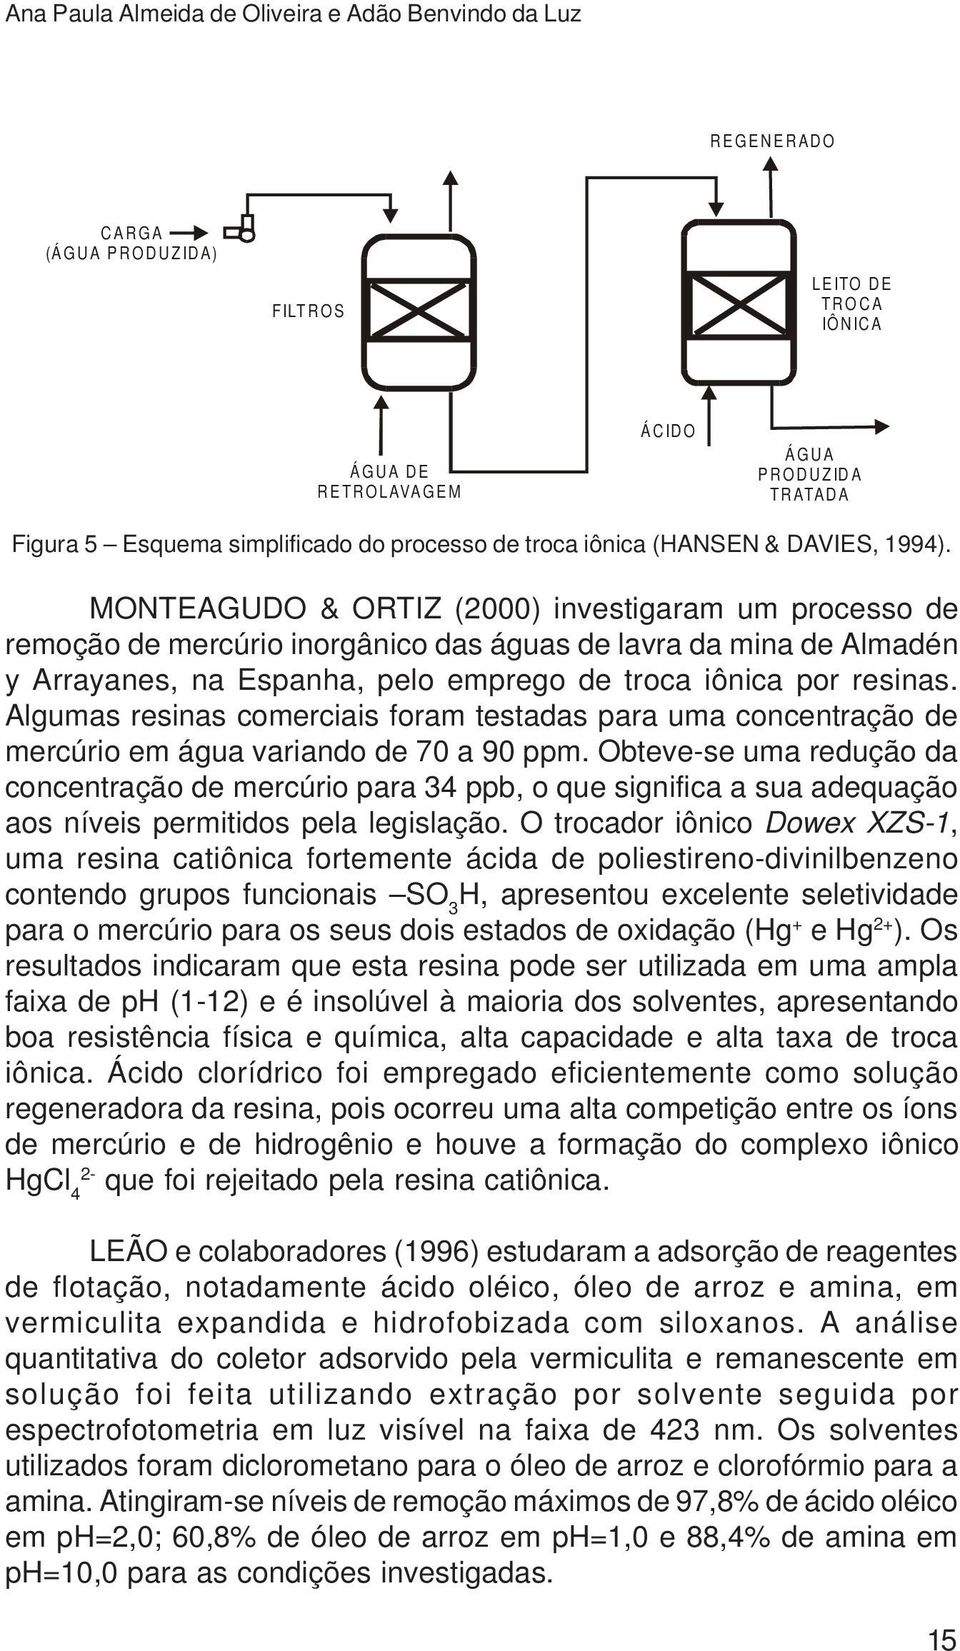 MONTEAGUDO & ORTIZ (2000) investigaram um processo de remoção de mercúrio inorgânico das águas de lavra da mina de Almadén y Arrayanes, na Espanha, pelo emprego de troca iônica por resinas.